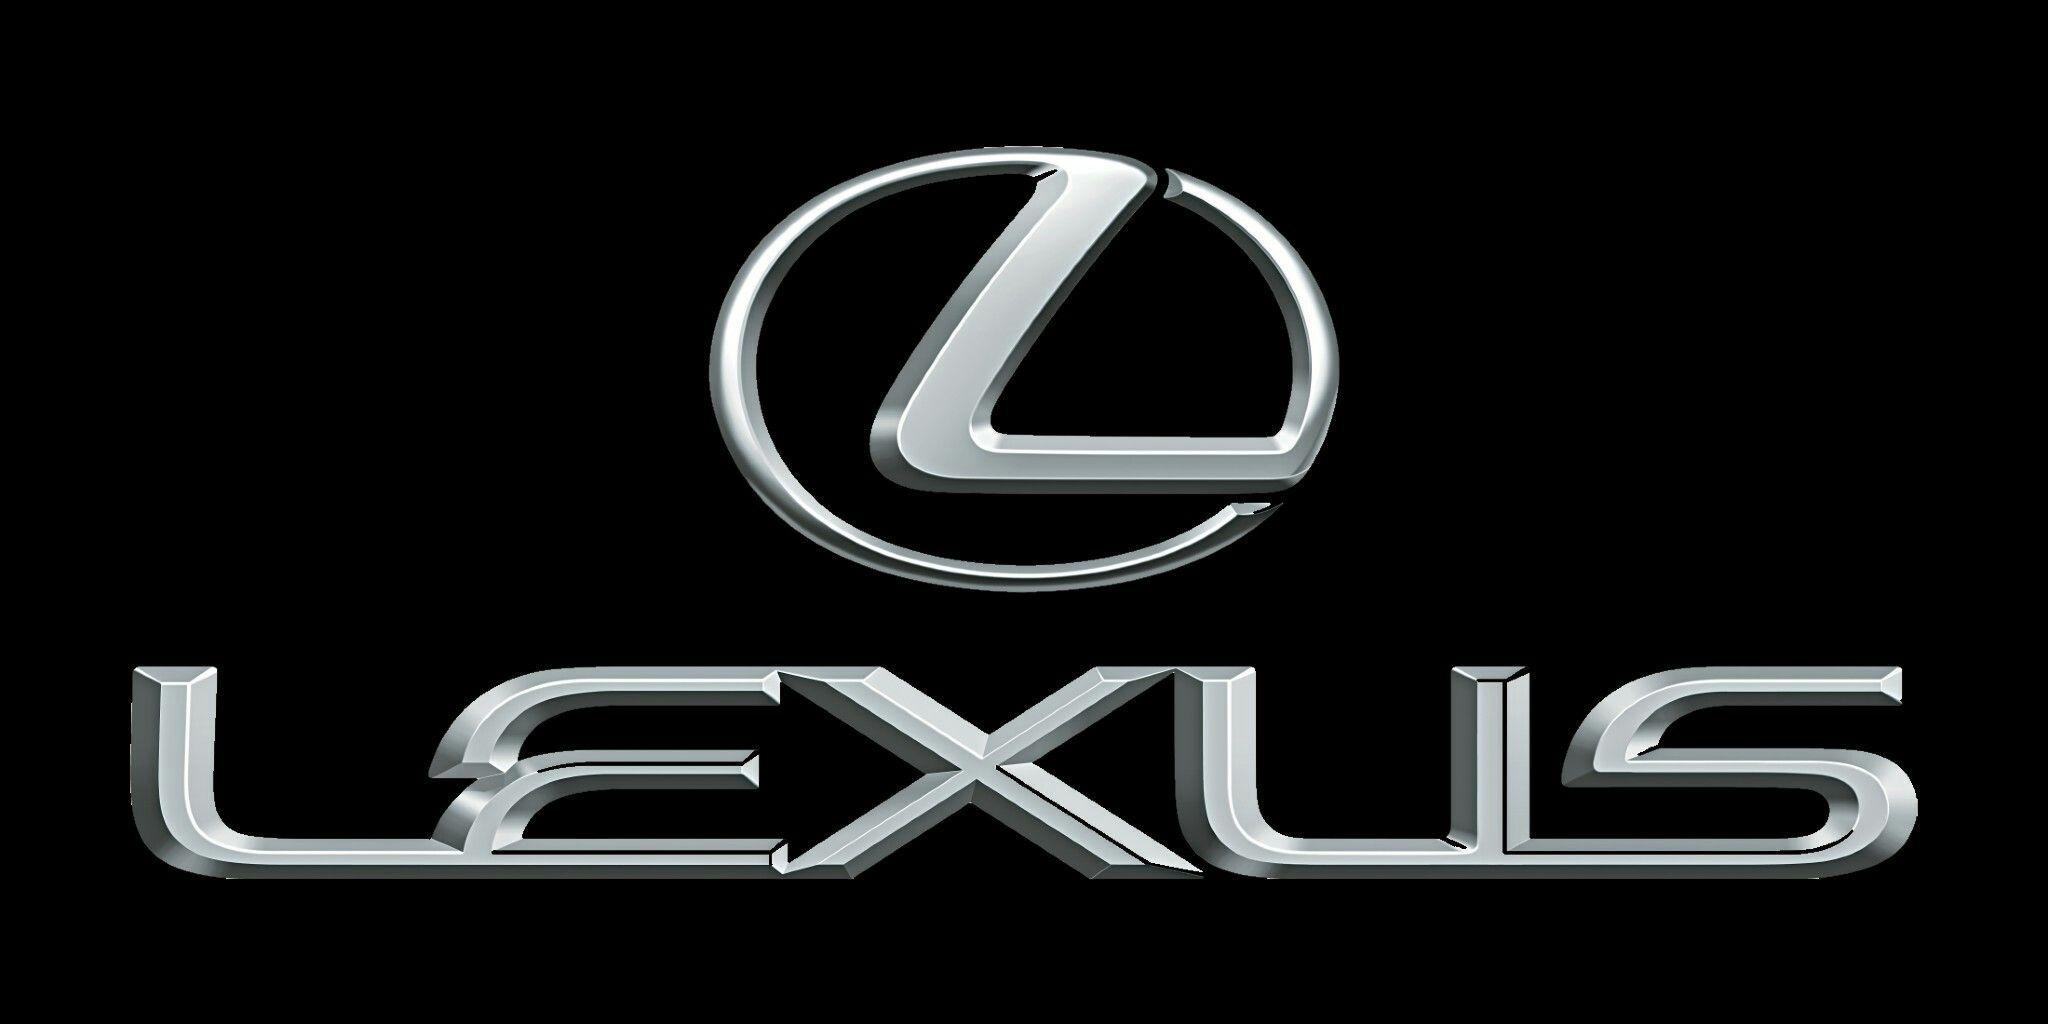 Lexus Logo Wallpapers - Top Những Hình Ảnh Đẹp